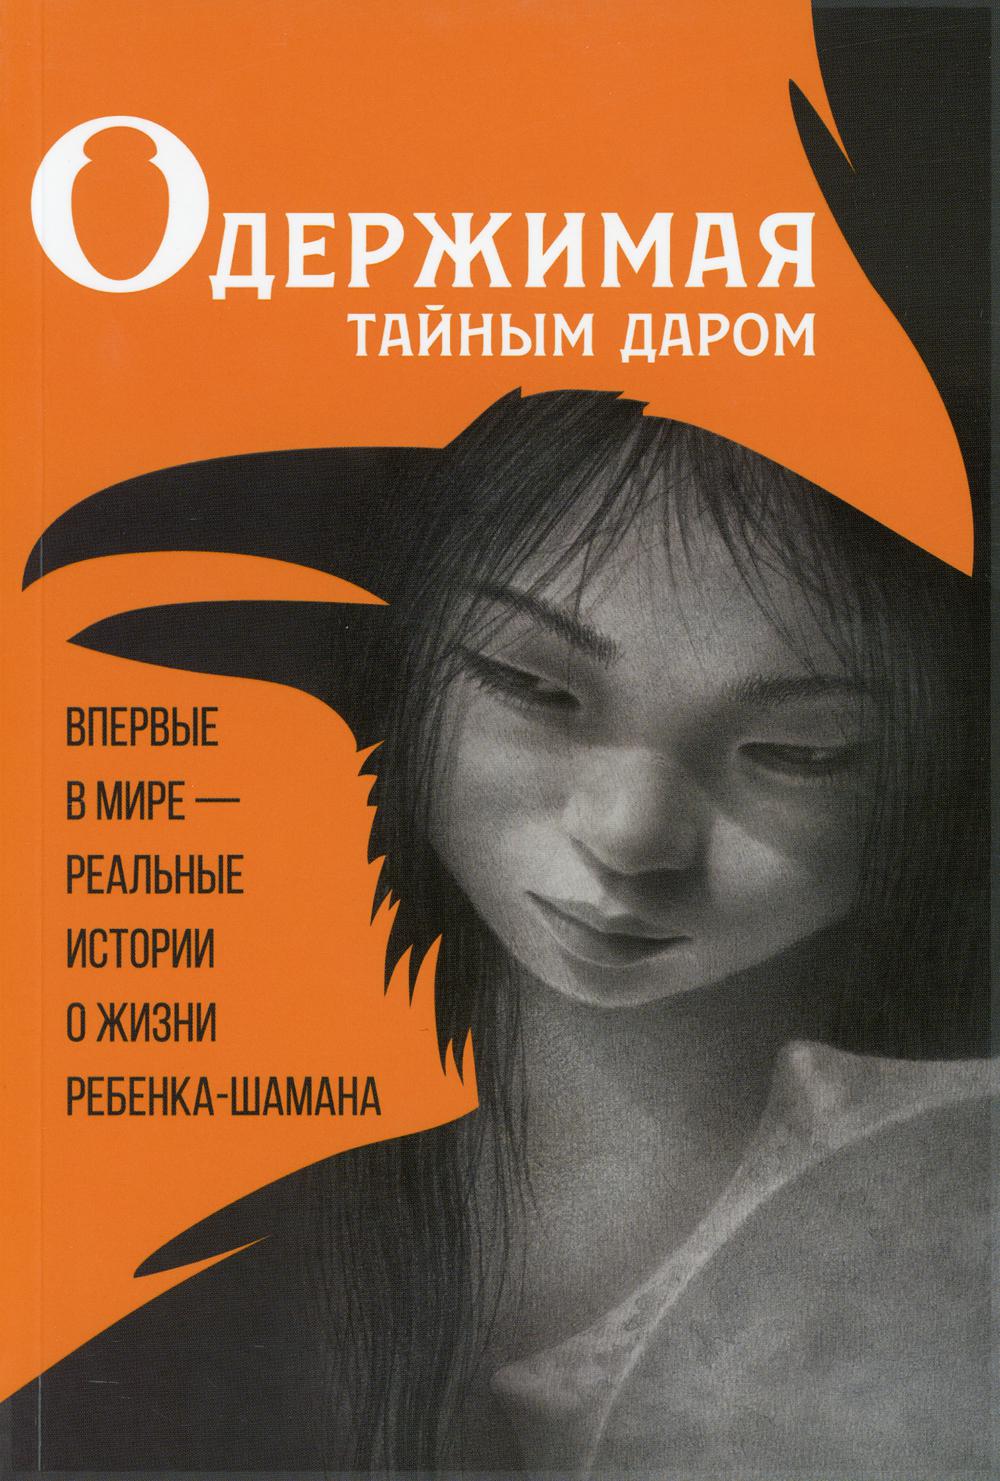 фото Книга одержимая тайным даром: документальная проза о кюннэй кардашевской. 2-е изд айар